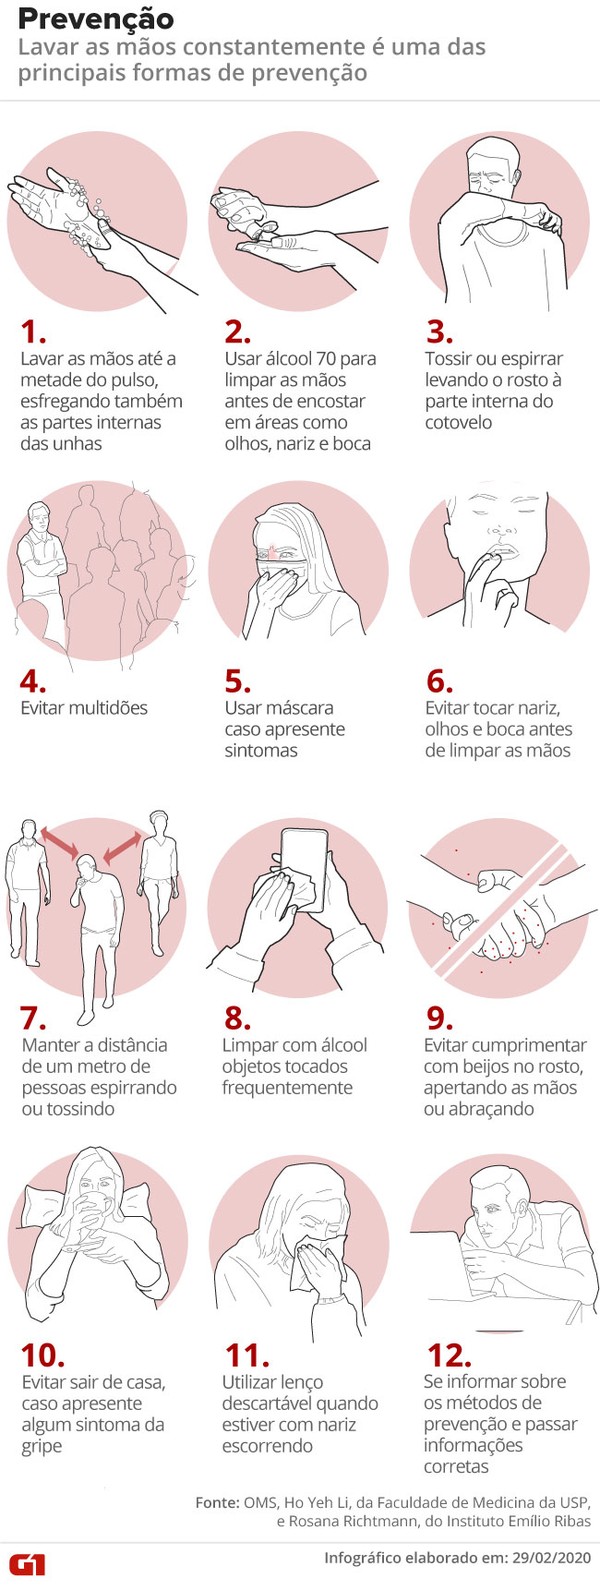 Brasil tem mais de 140 casos confirmados da doença